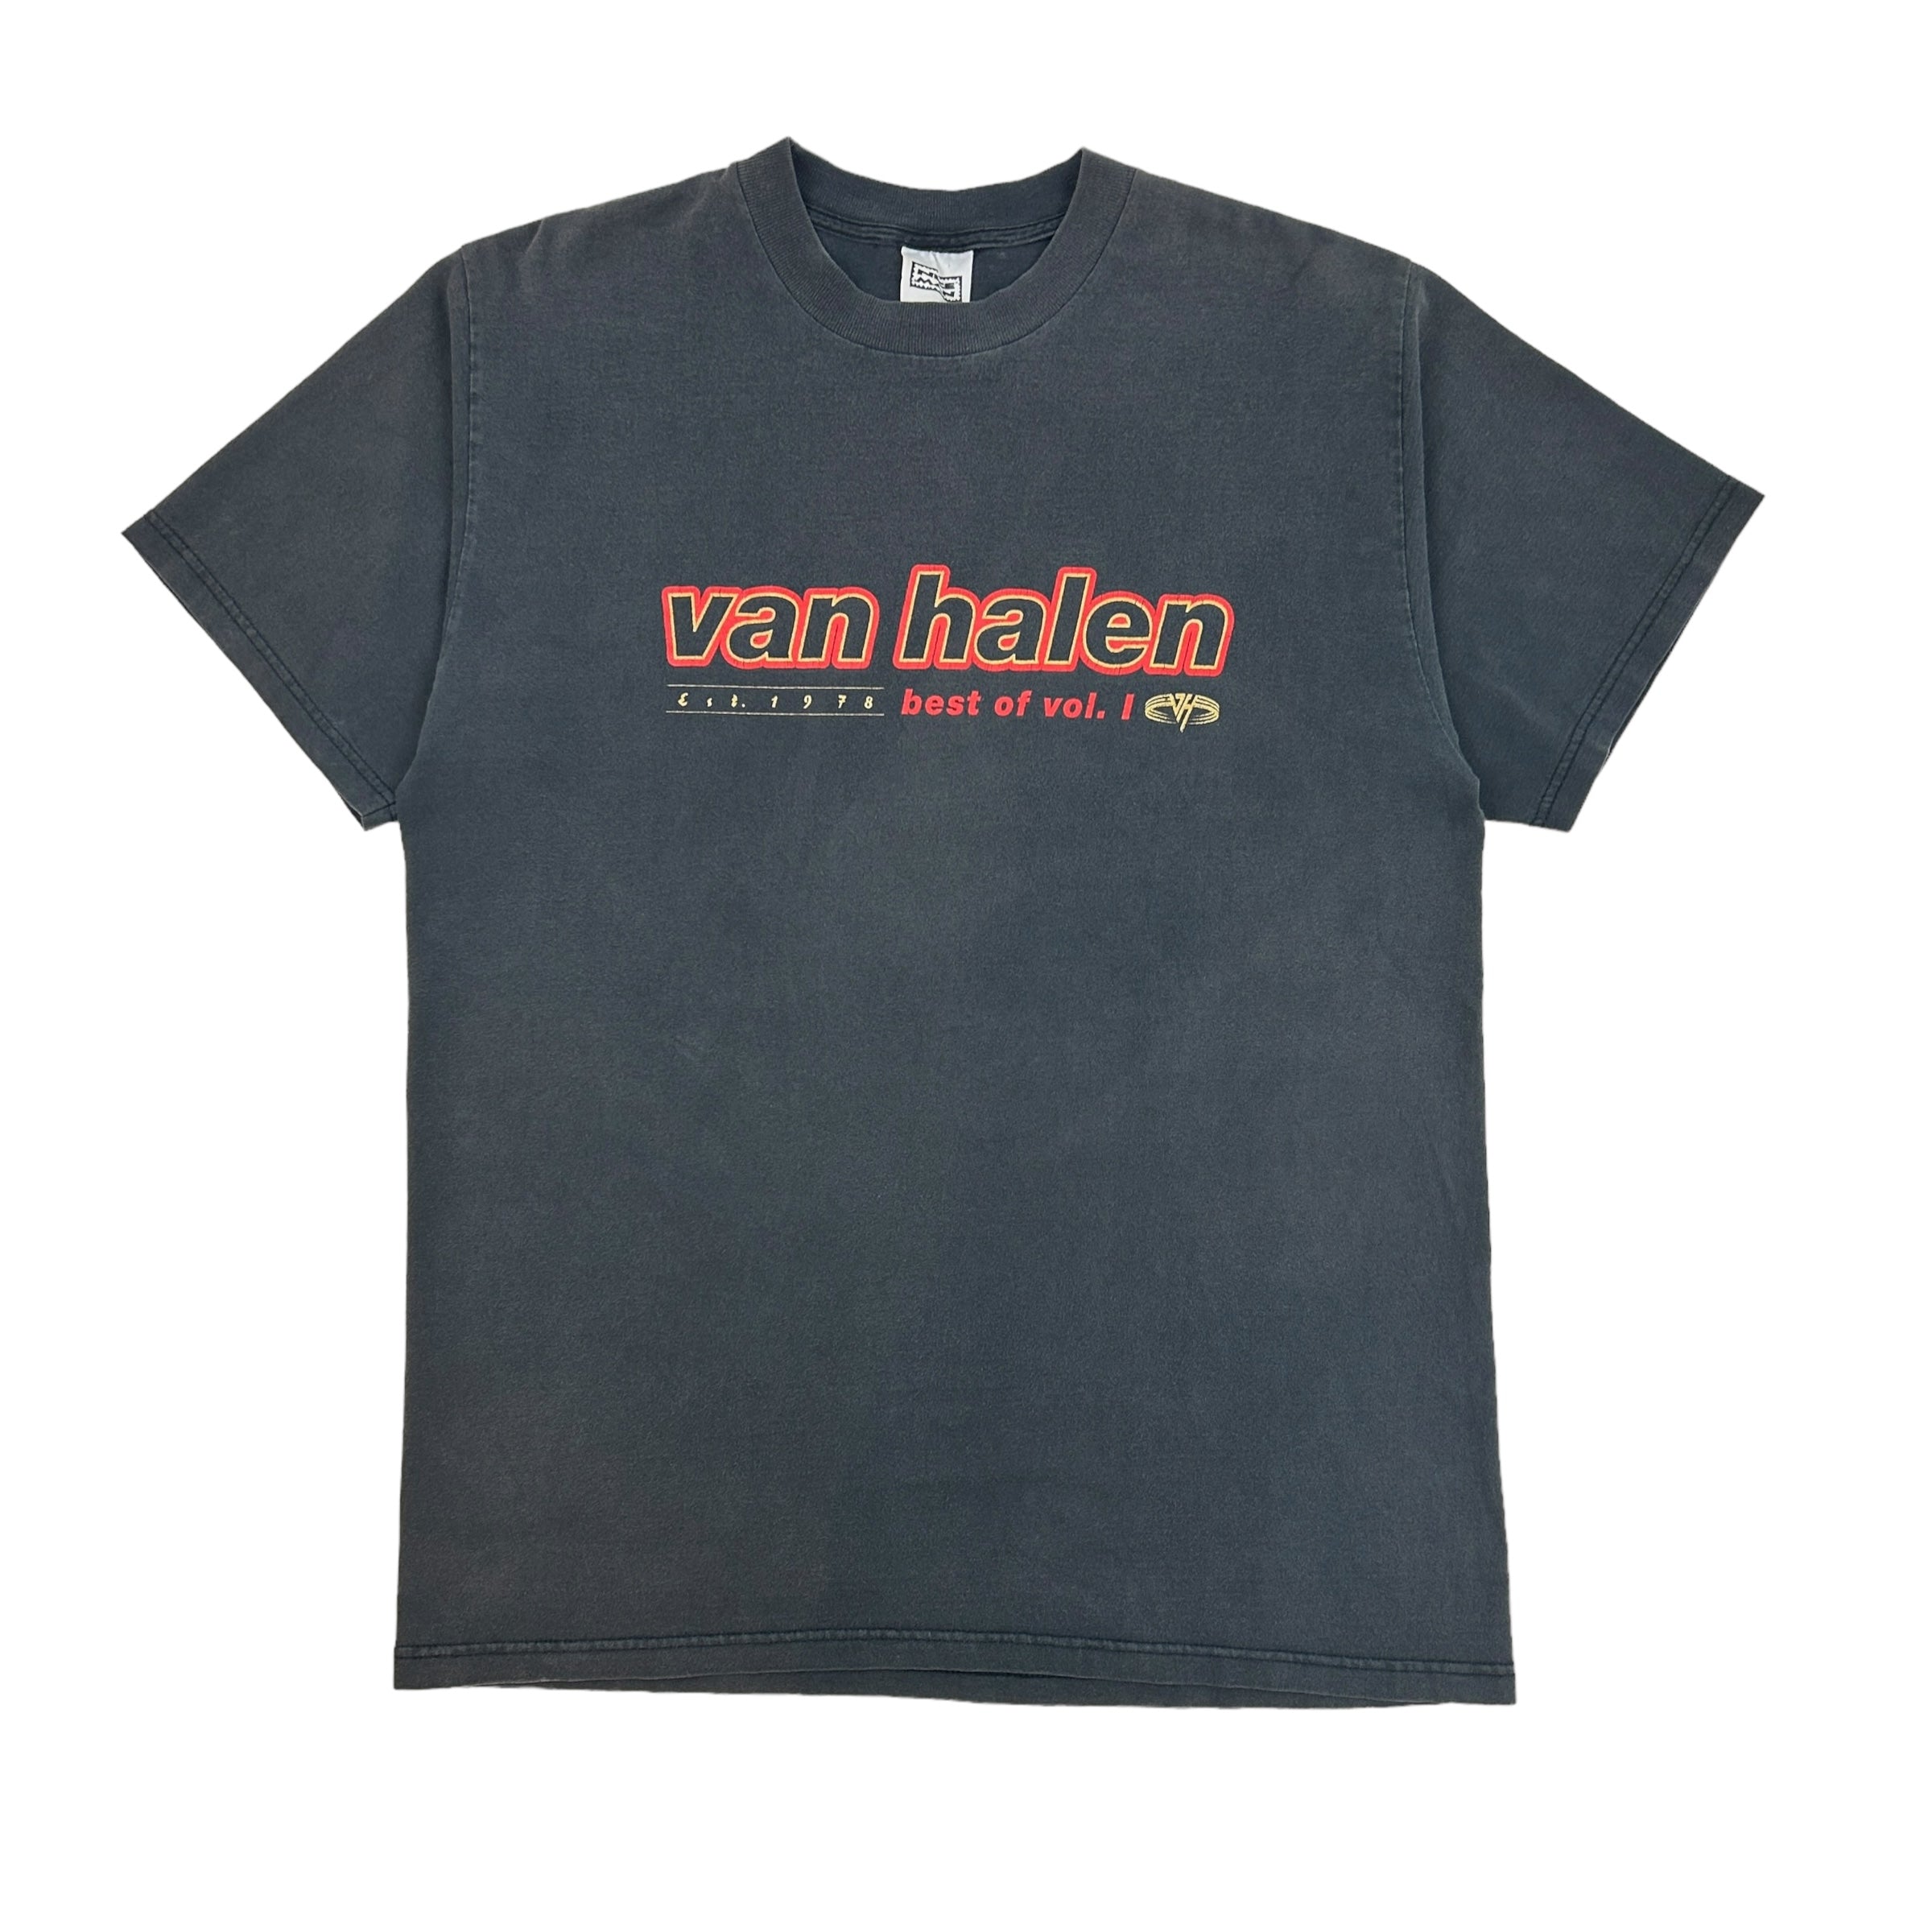 1996 Van Halen Best of Vol. 1 T-Shirt Black